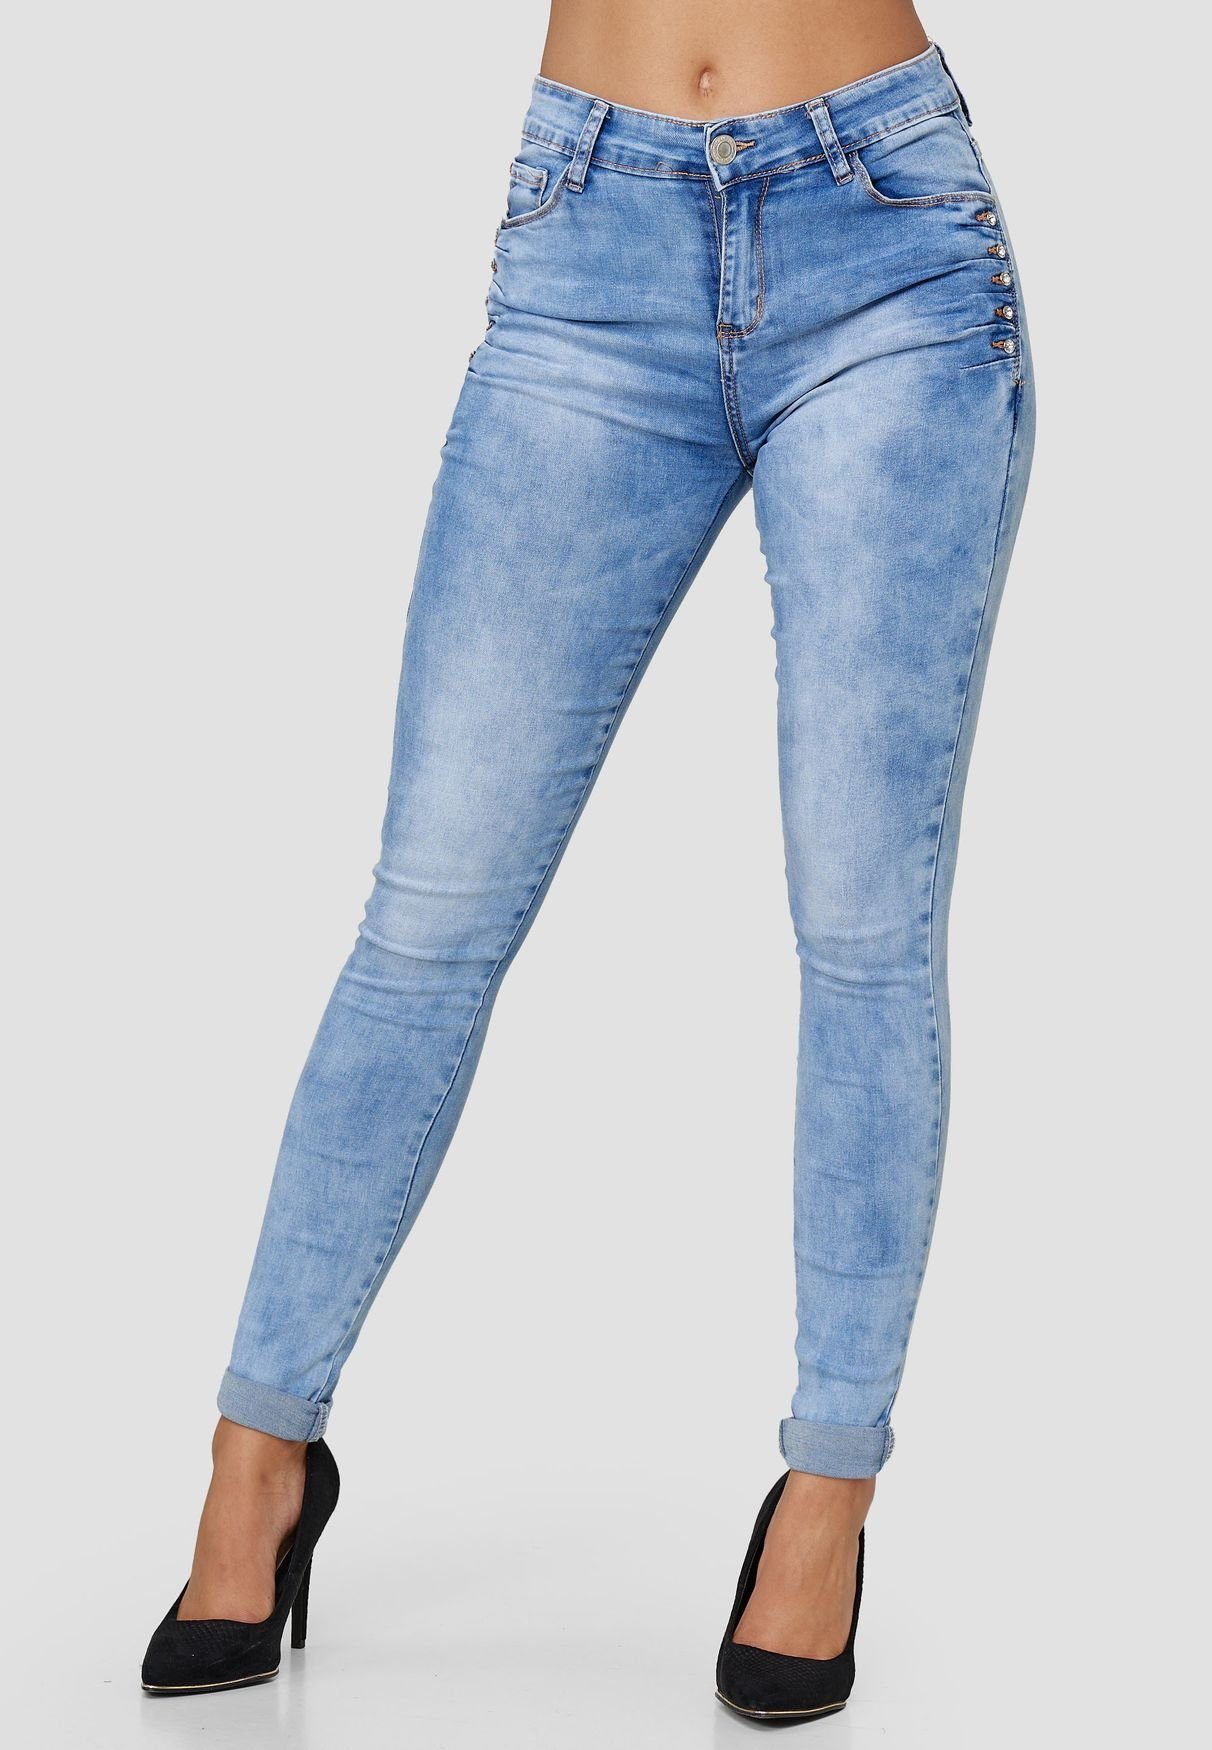 Jeremy Scott Denim Jeanshose in Blau Damen Bekleidung Jeans Jeans mit gerader Passform 